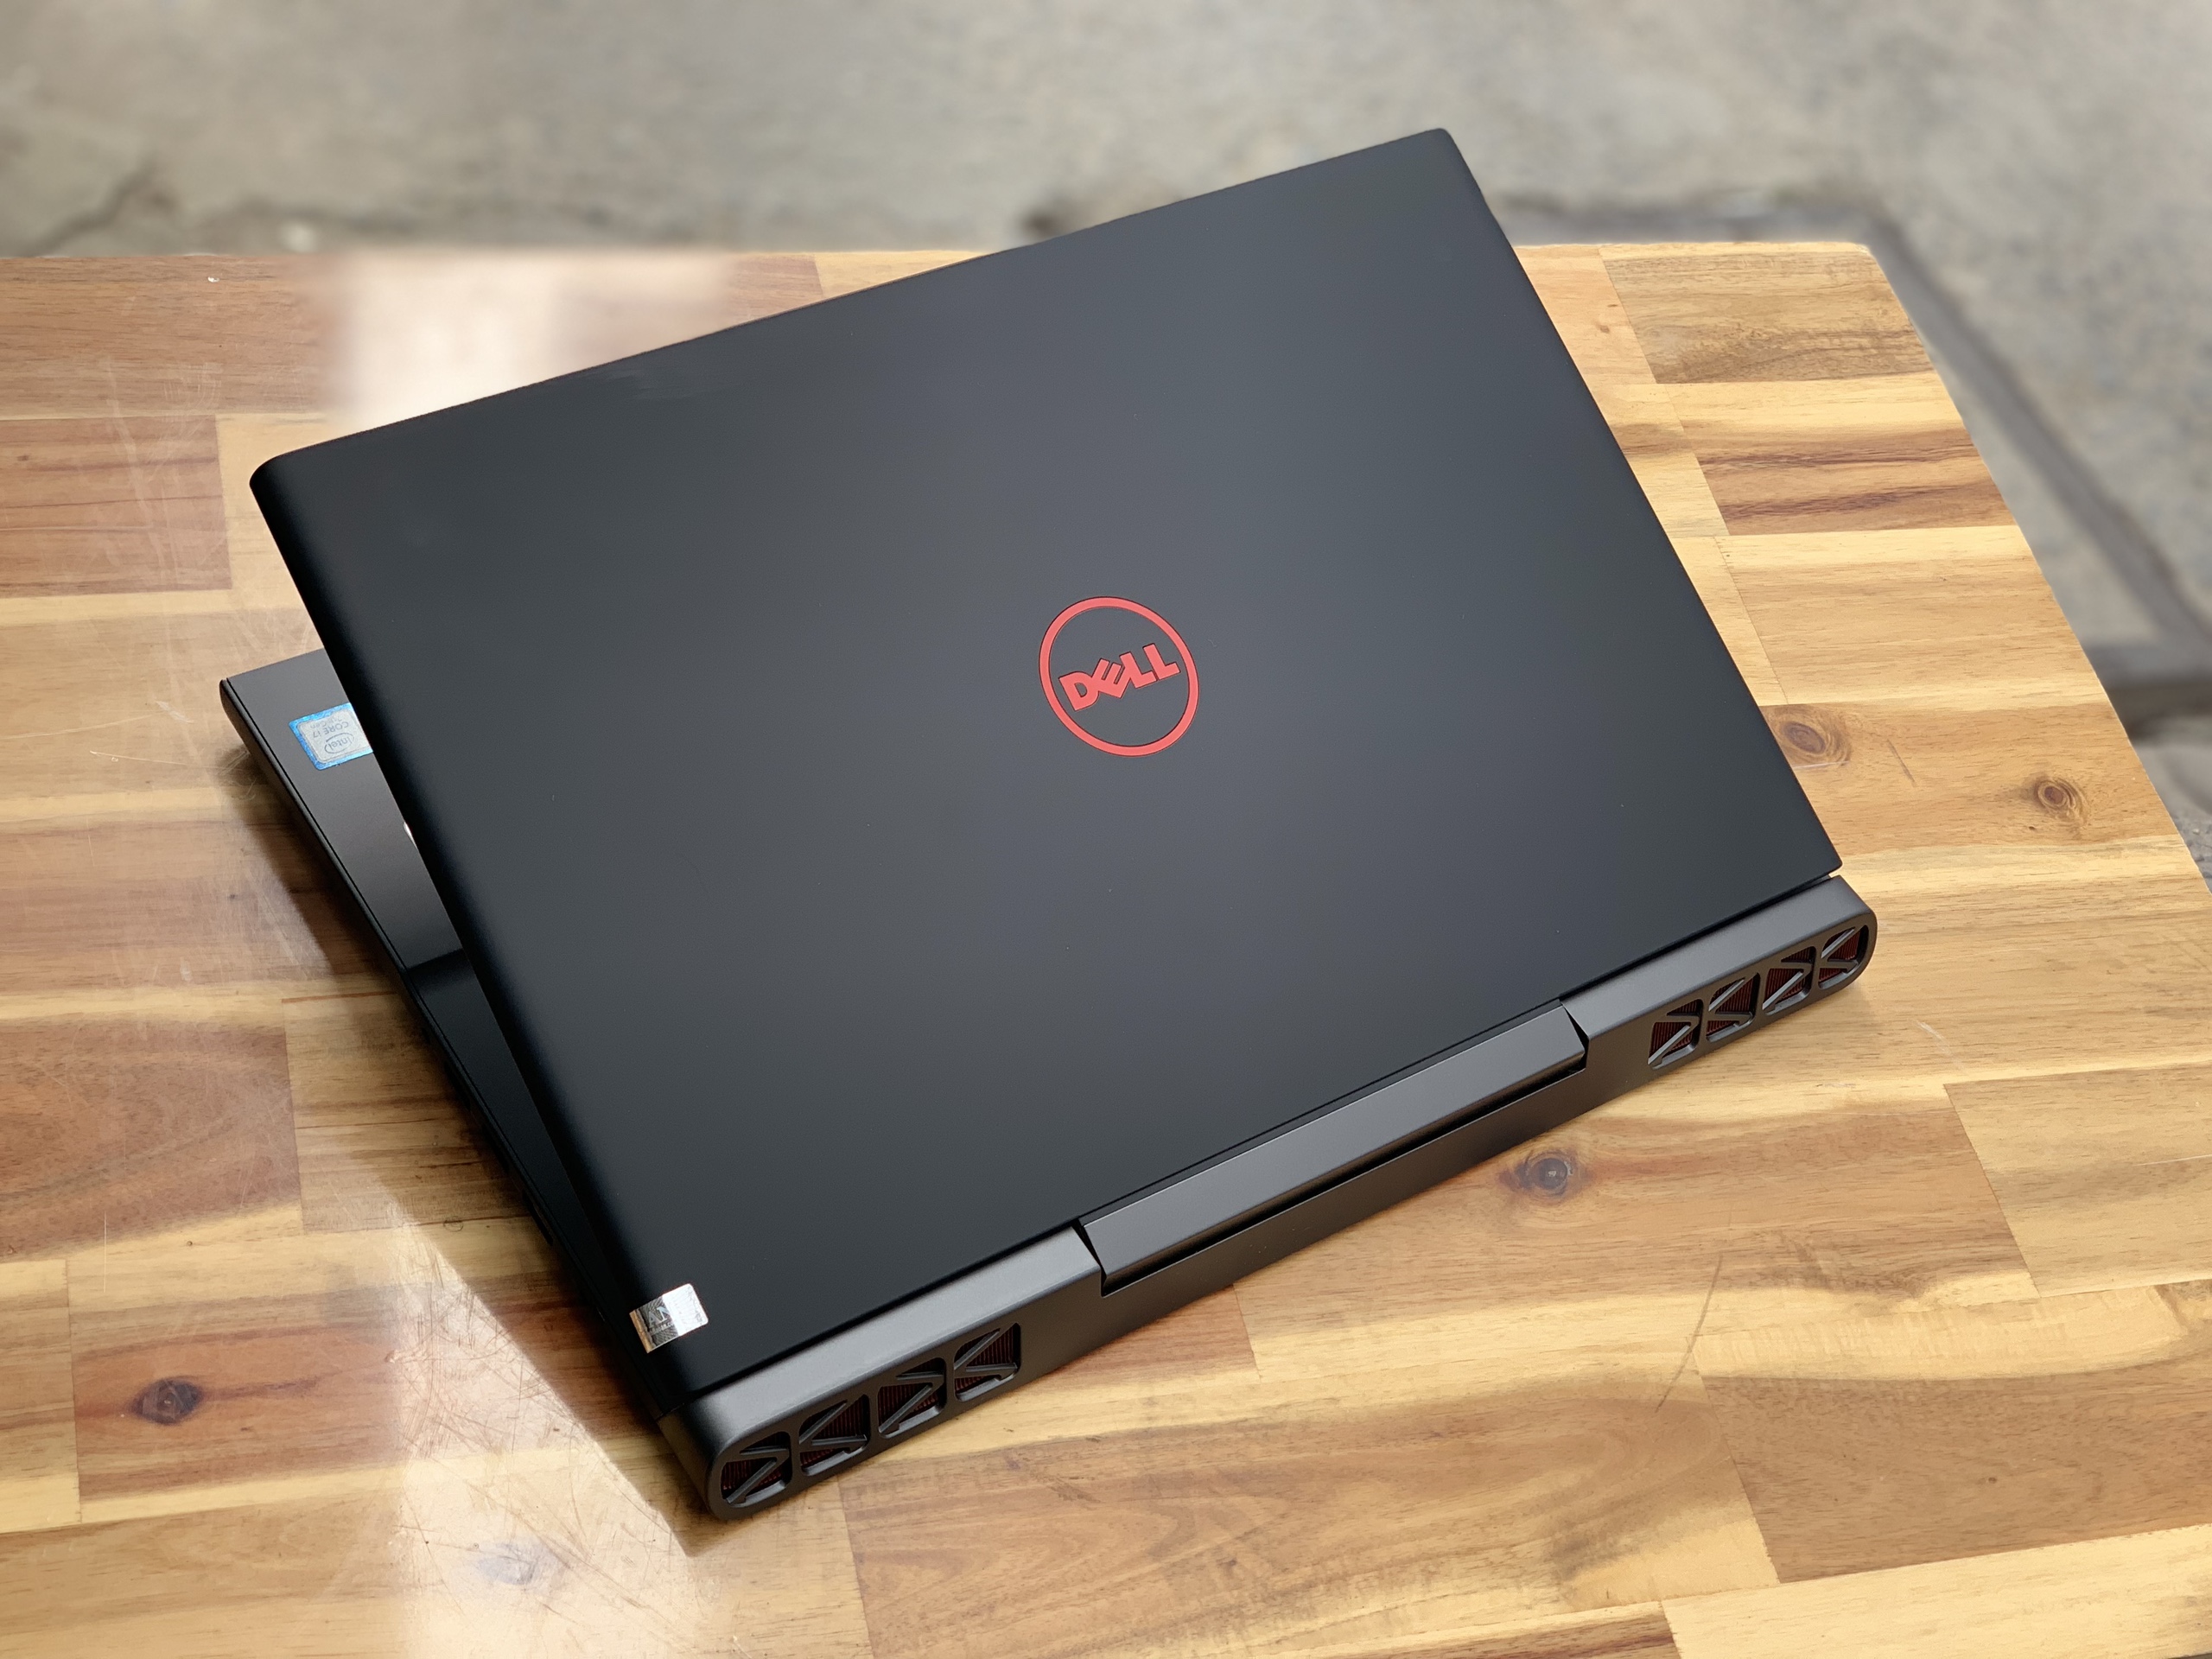 Laptop Dell Gaming 7567, i7 7700HQ 8G SSD128+1000G Vga GTX1050ti 4G Full HD Đèn phím Đẹp zin 100% Giá rẻ1